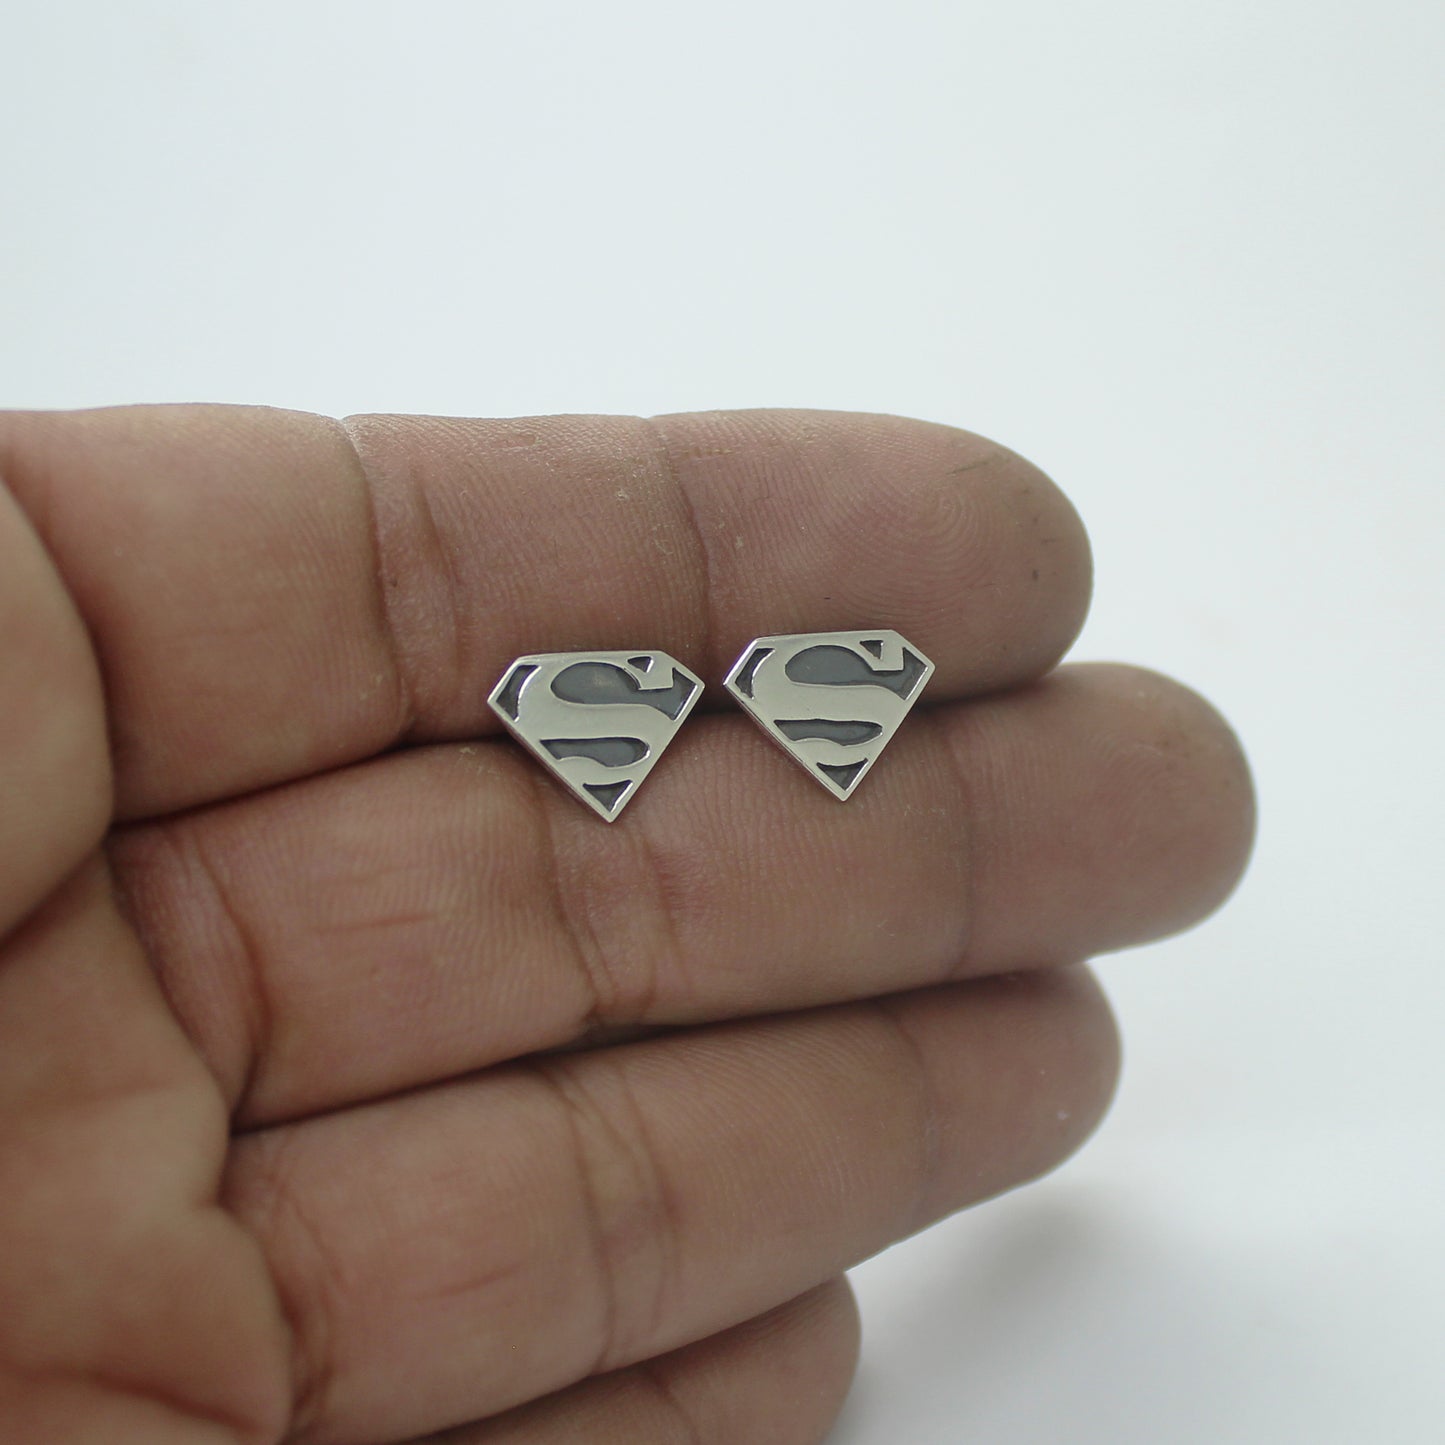 Superman earrings in 925 silver